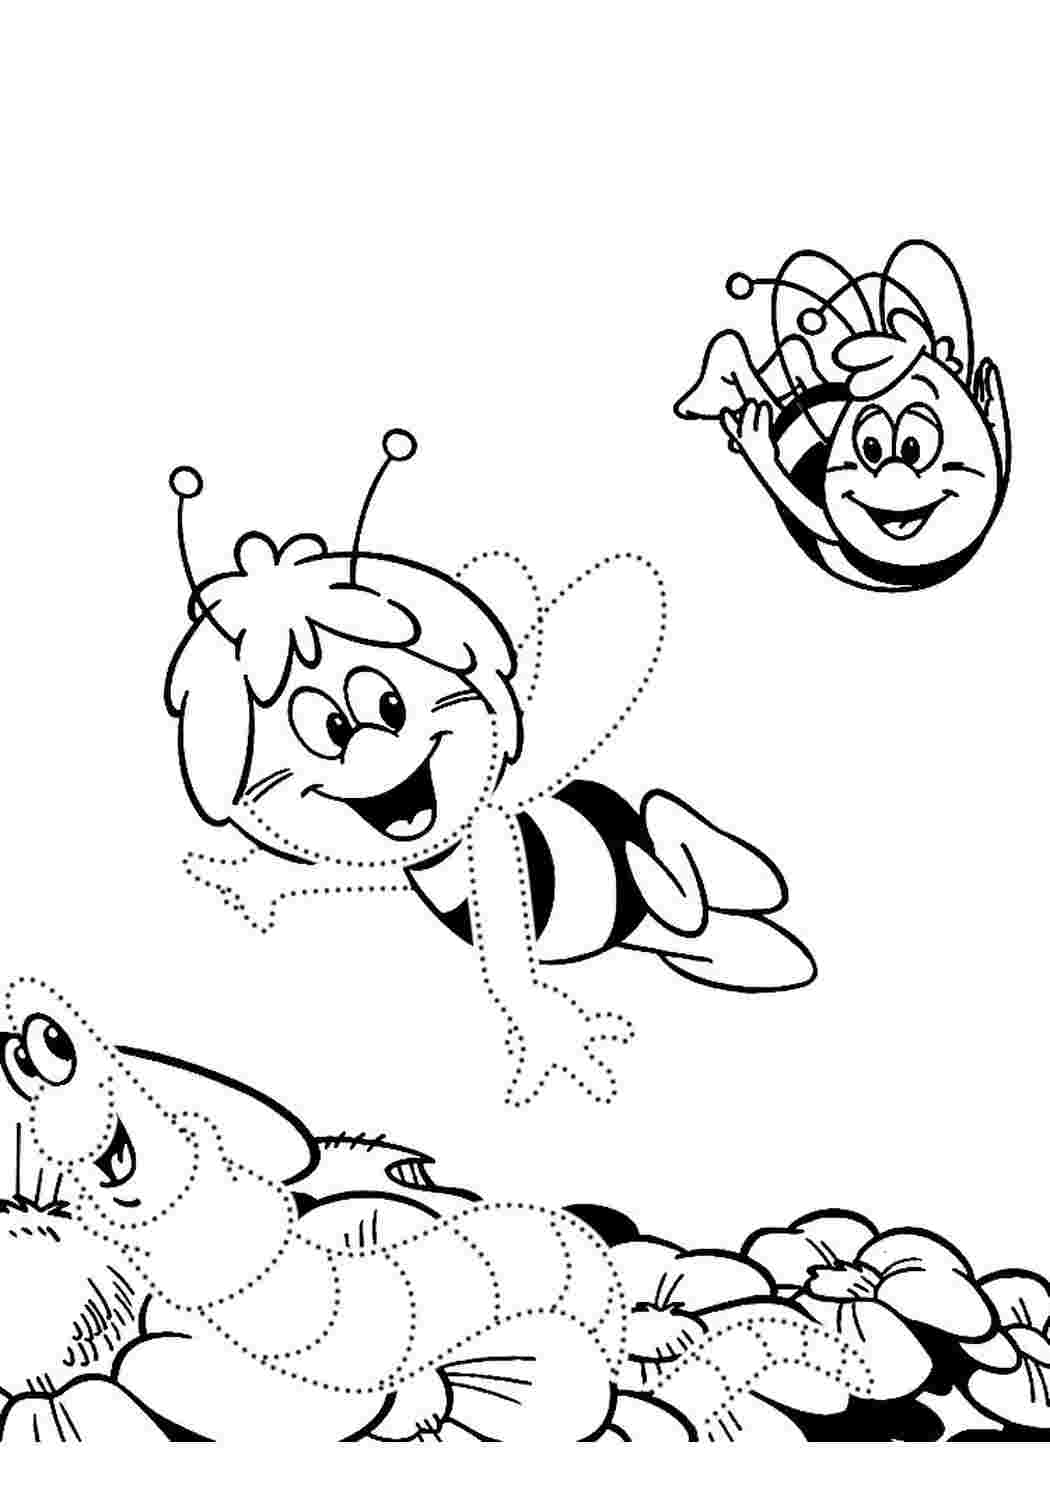 Пчелка раскраска распечатать. Пчелка раскраска. Пчела раскраска. Раскраска пчёлка для детей. Пчелка Майя раскраска.